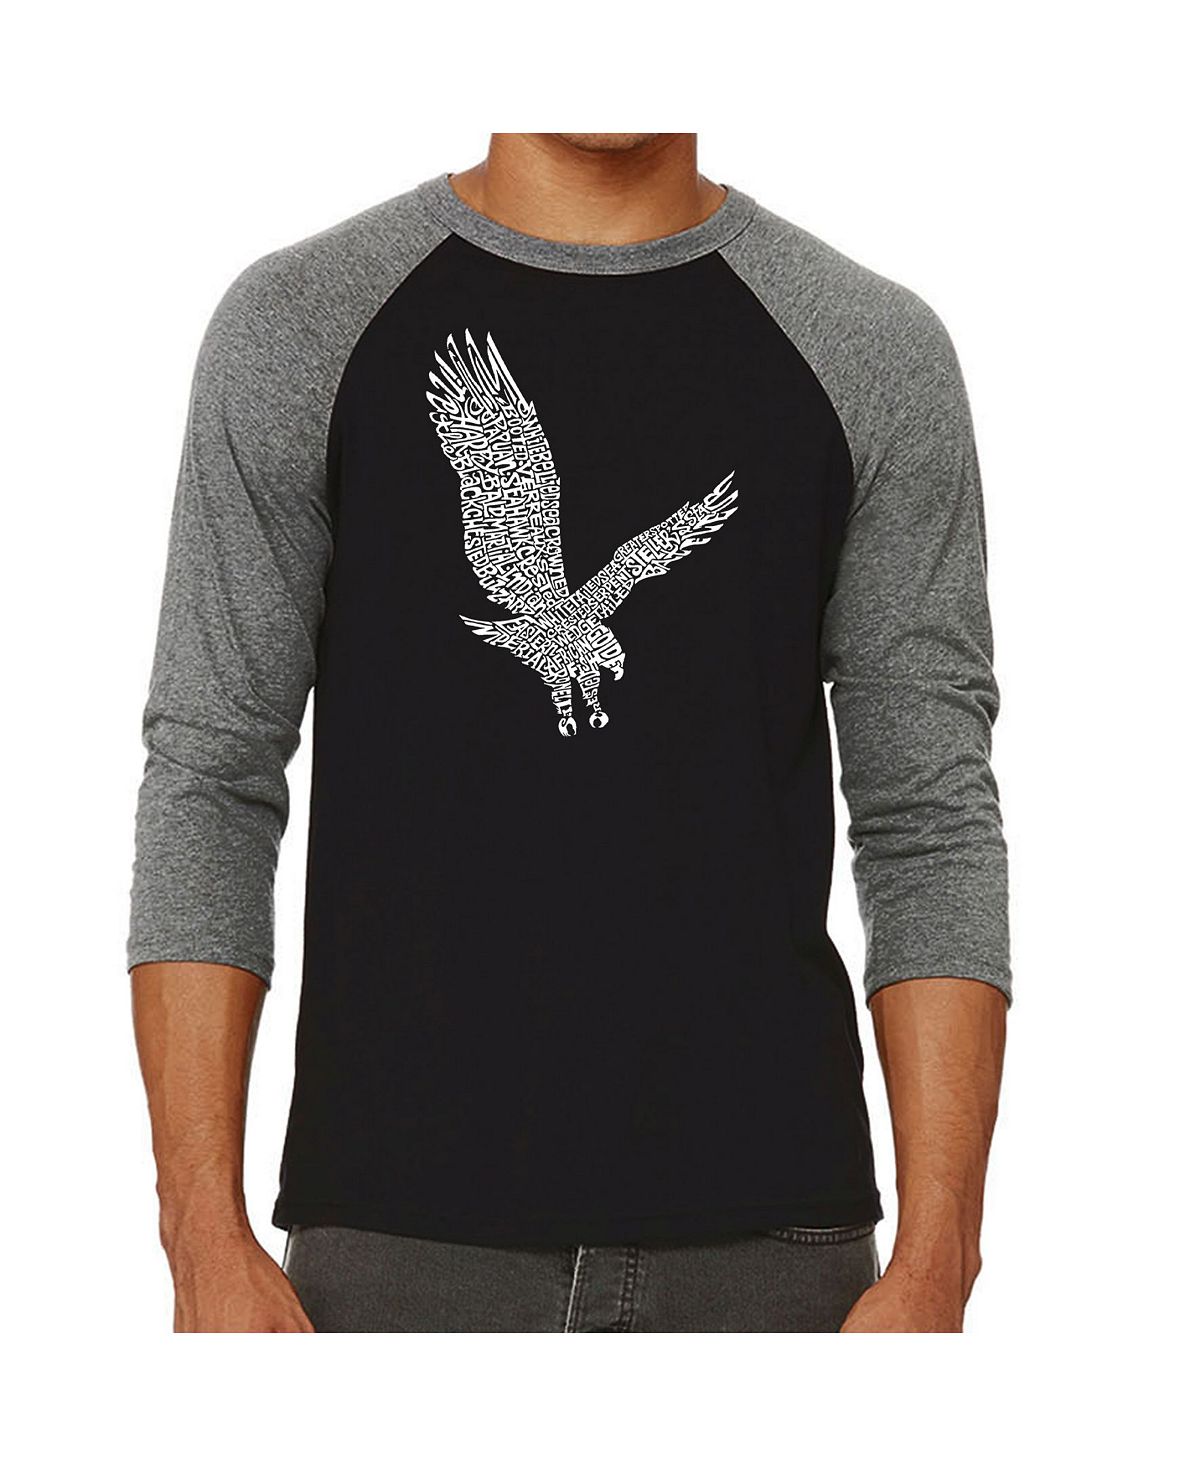 Мужская футболка с надписью eagle и регланом word art LA Pop Art, серый мужская футболка с принтом пиратский череп и регланом word art la pop art черный